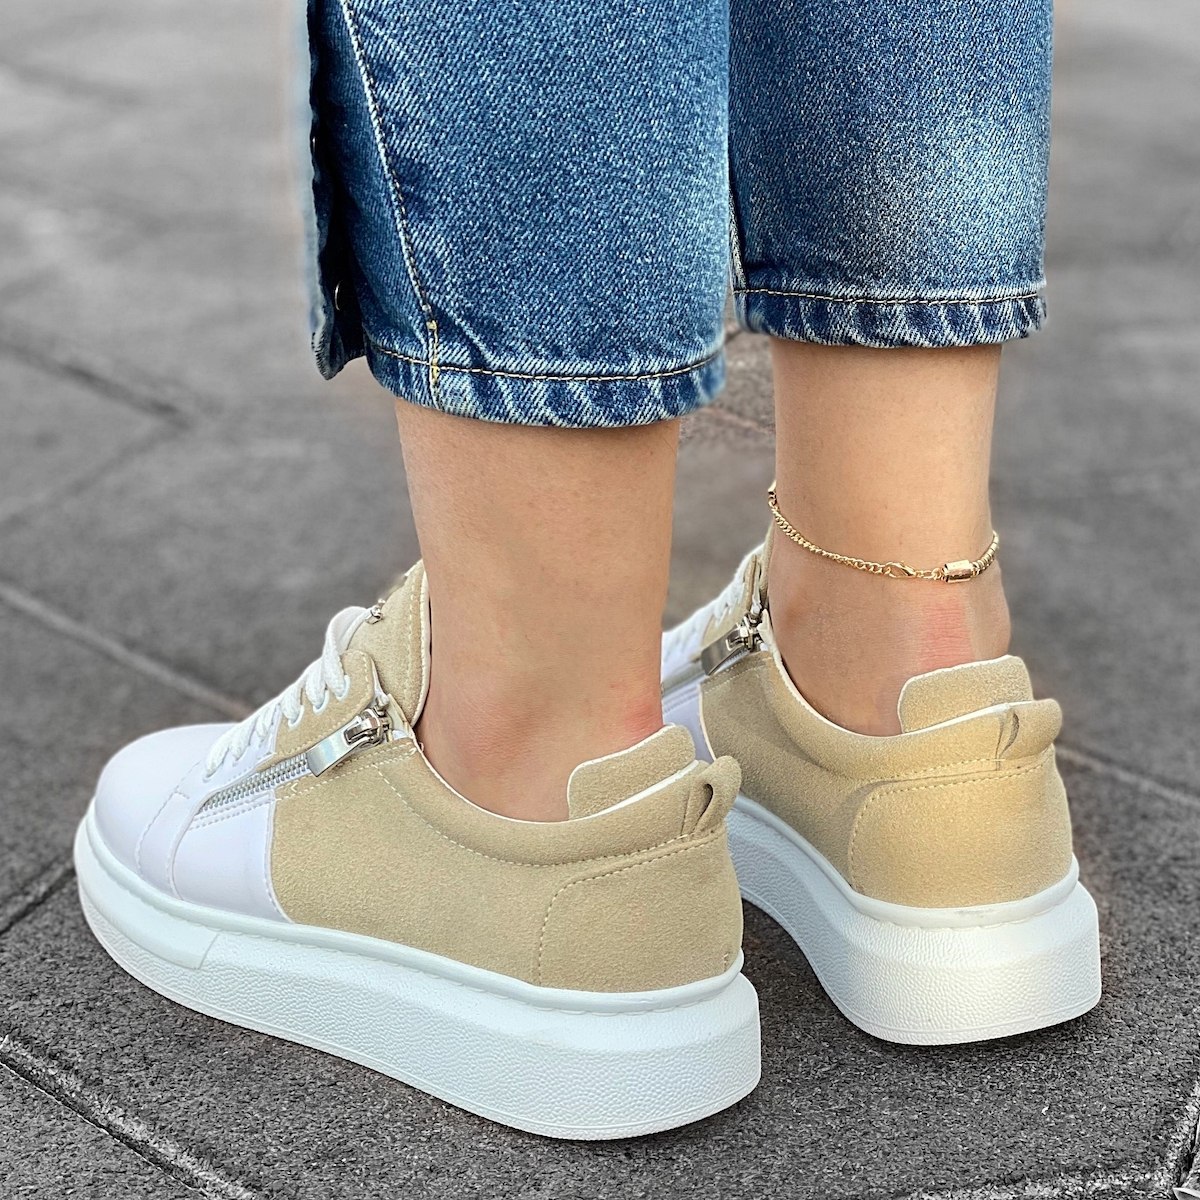 Zapatillas para Mujer de Suela Alta con Cremalleras en Crema y Blanco | Martin Valen